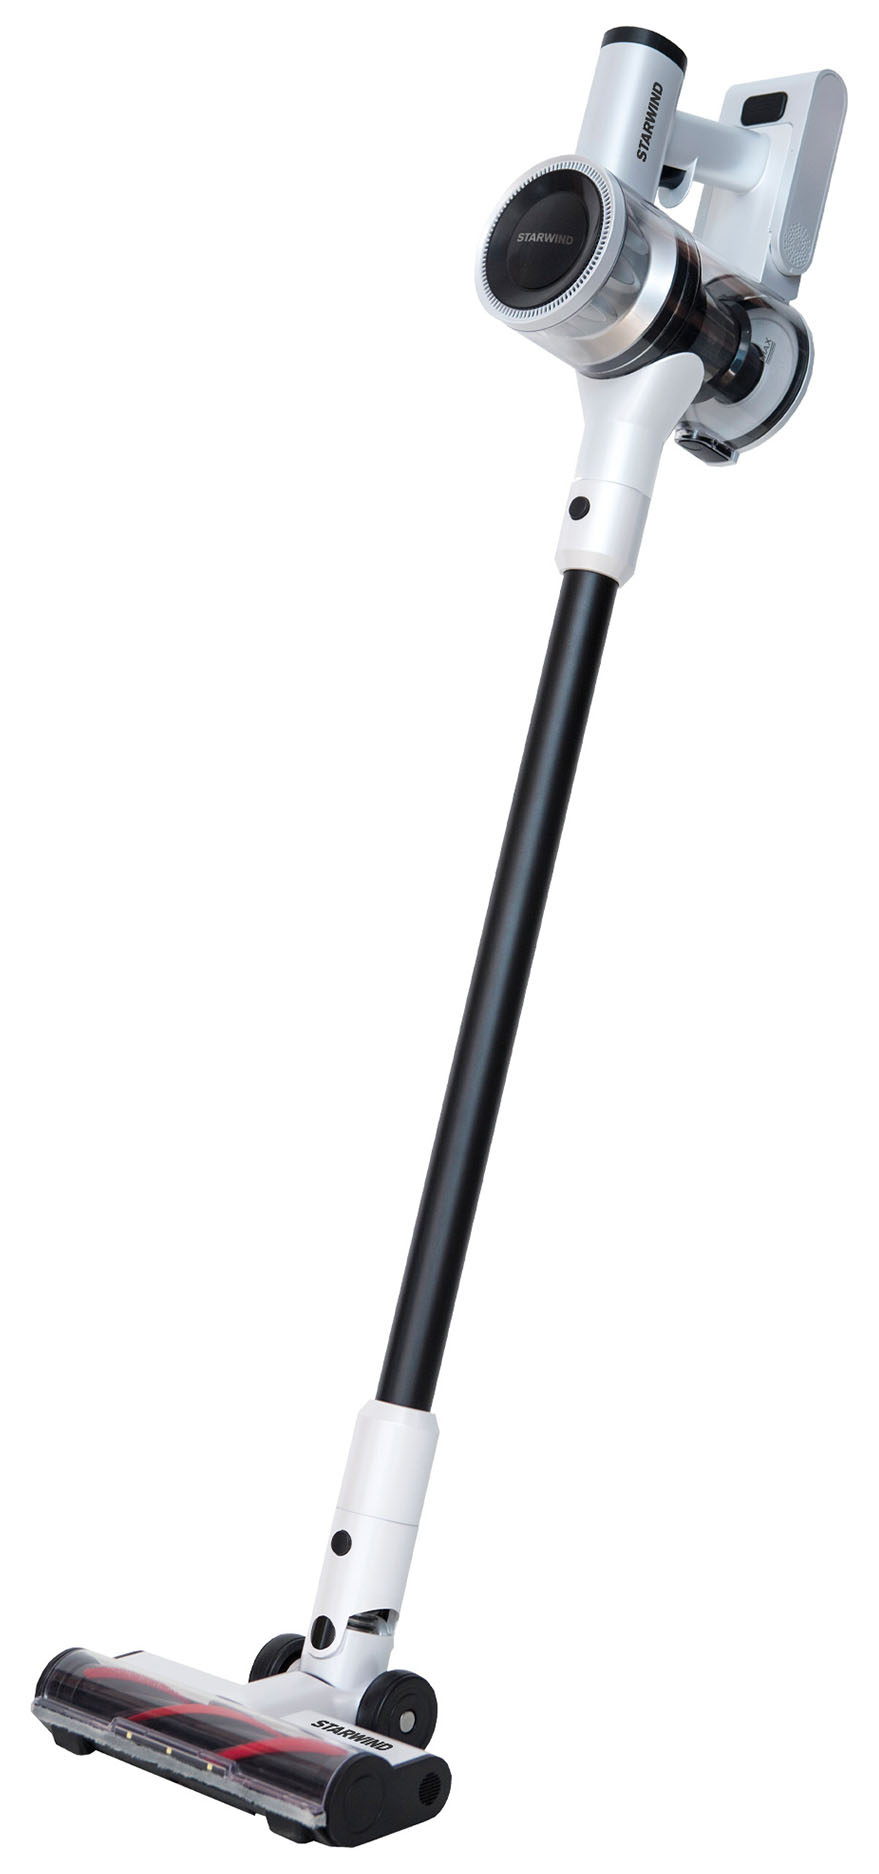 Вертикальный пылесос Starwind SCH9950 270Вт, питание от аккумулятора, белый/черный (SCH9950) б/у, следы эксплуатации, царапины и потертости по корпусу, комплект: полный